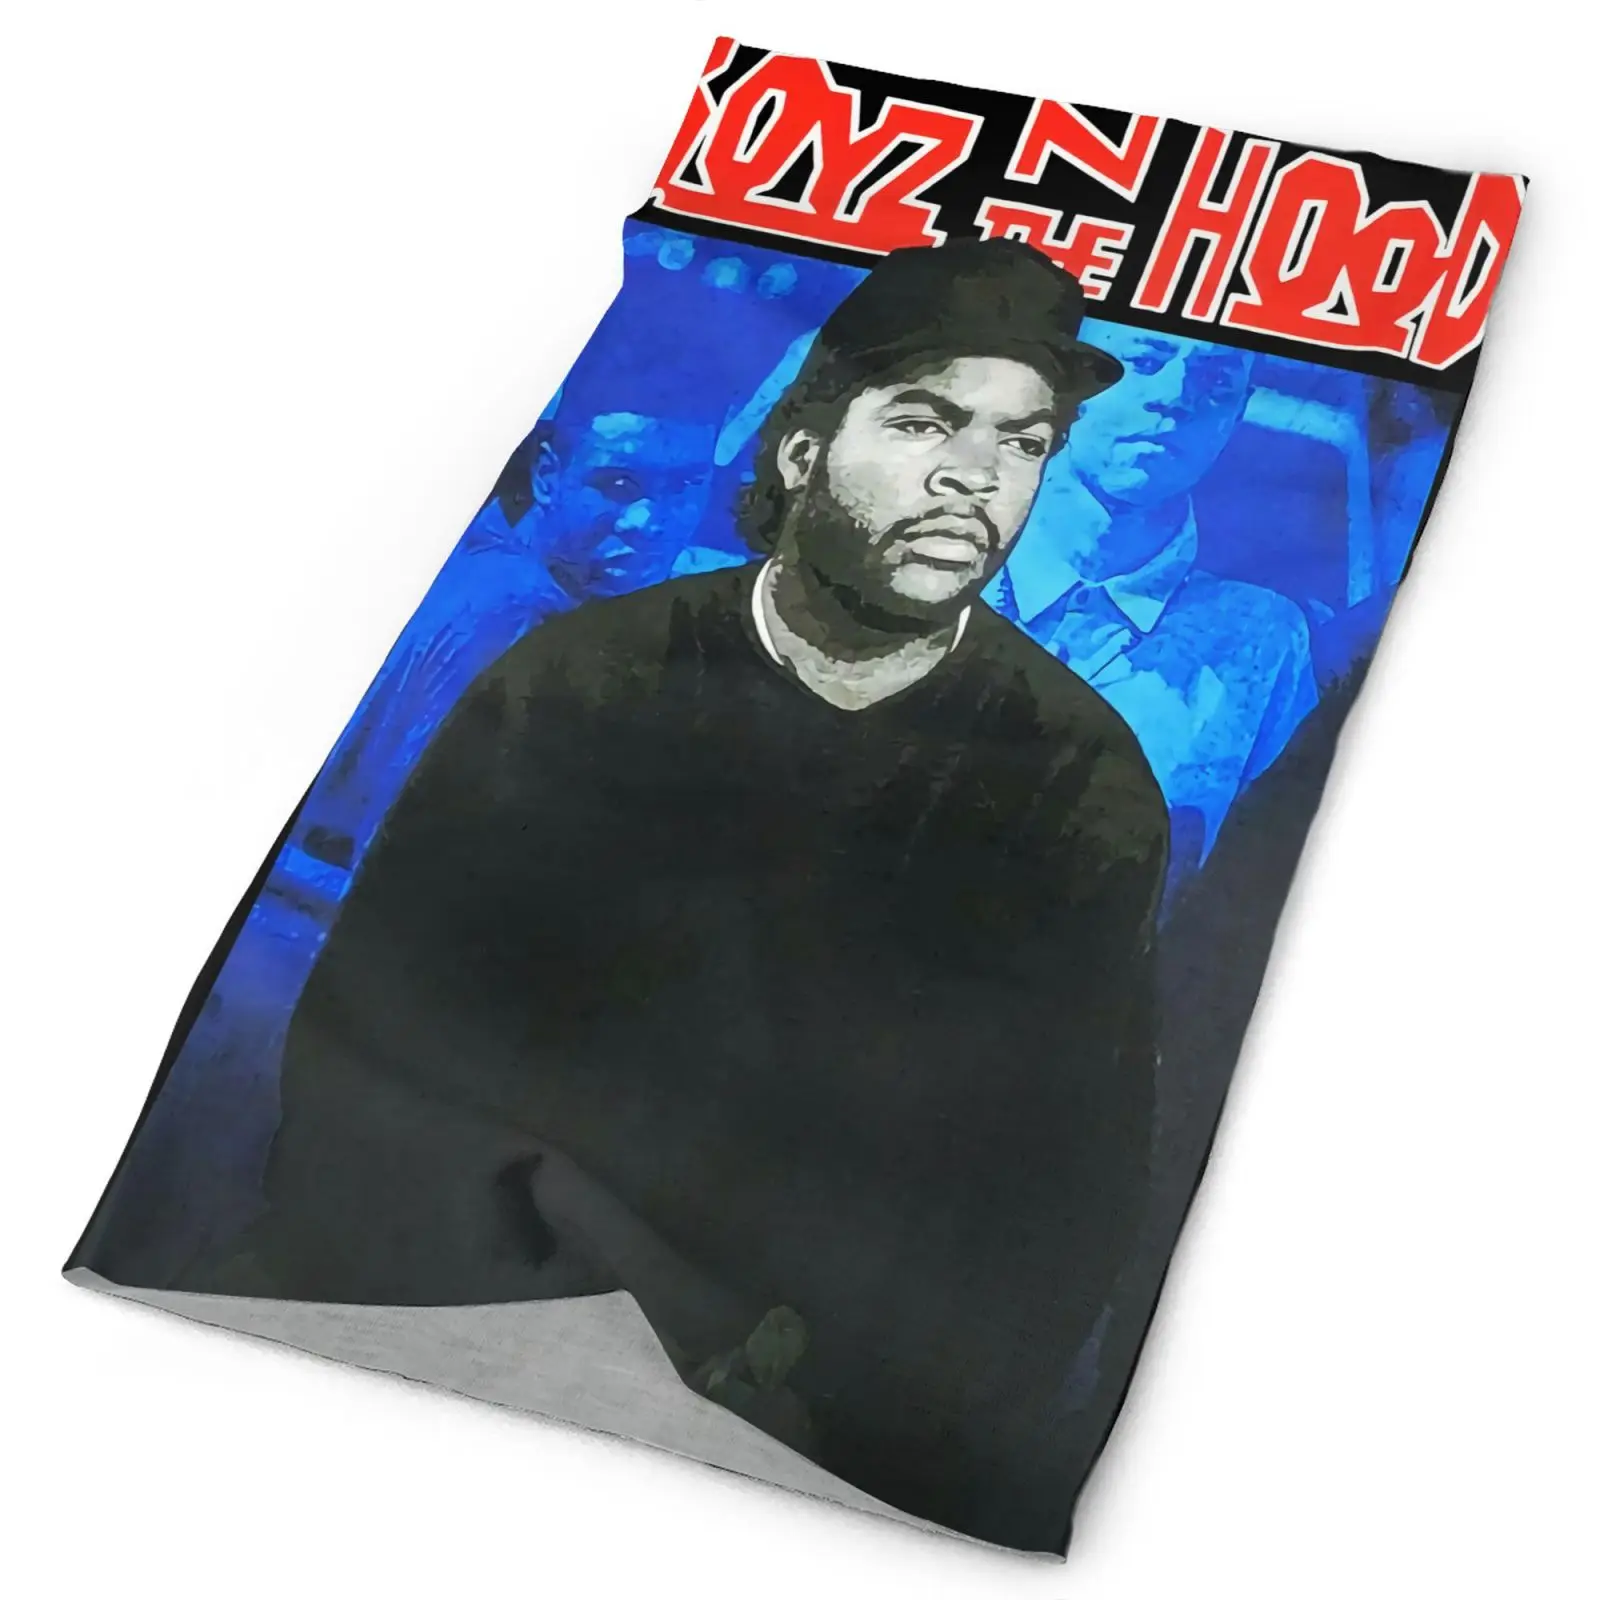 

Boyz N The Hood Ice Cube 1417 Мужская бандана Shemagh туристическая маска тактическая снаряжение мужские охотничьи шарфы и шали